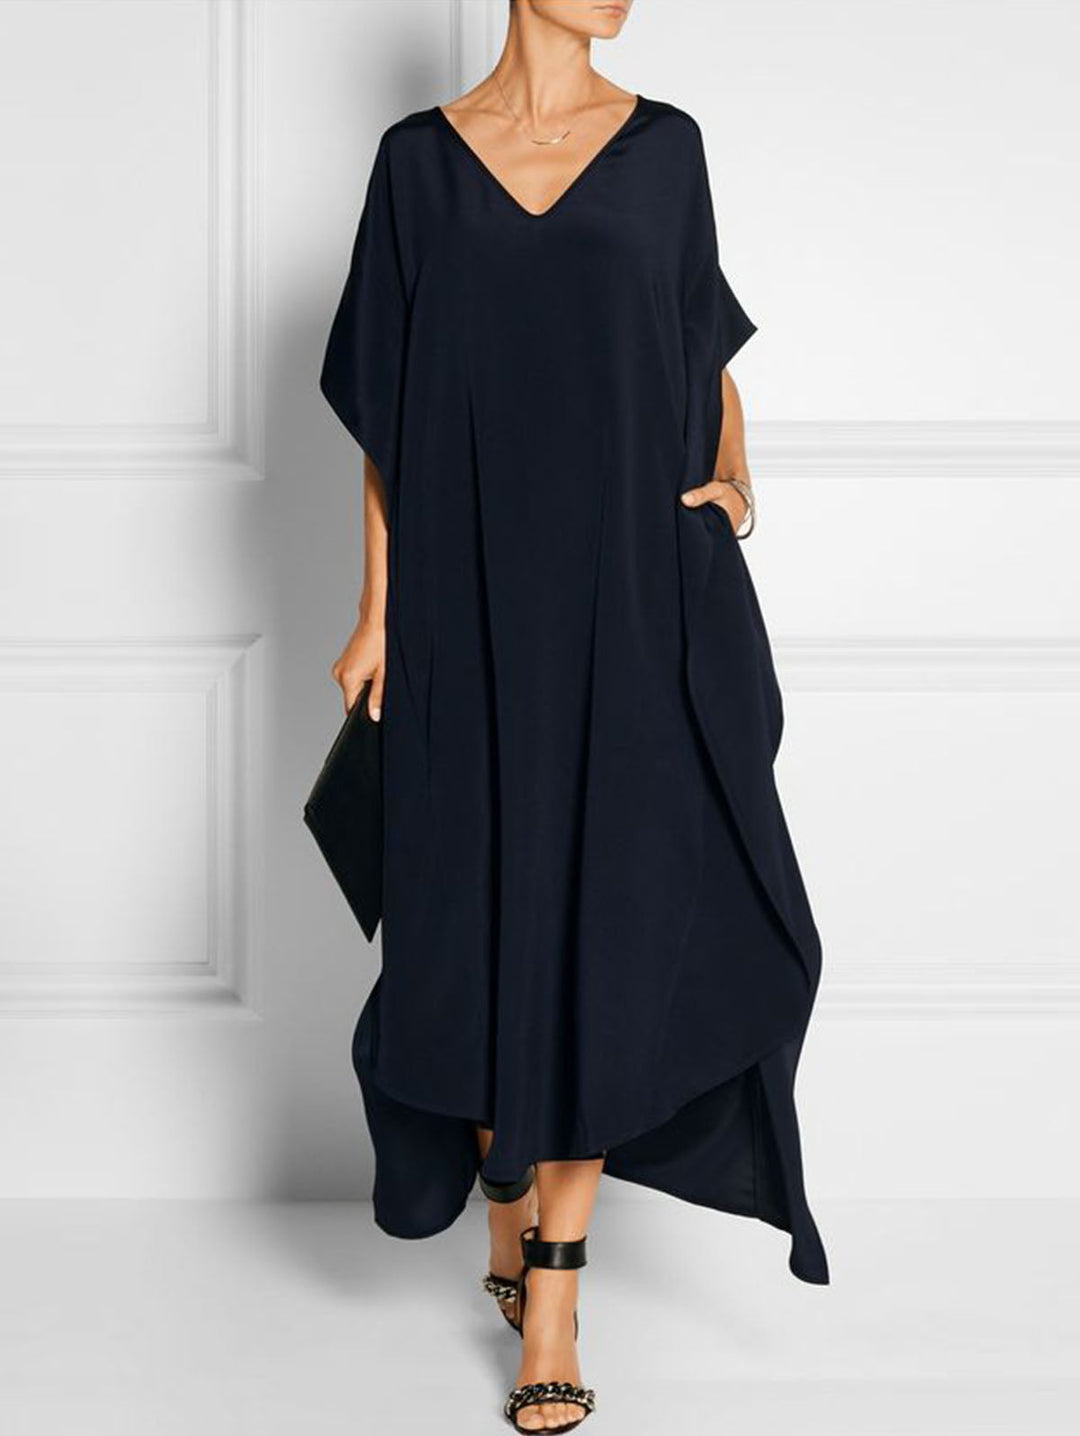 Summer Elegant Black V Neck Maxi Dress Short Sleeve